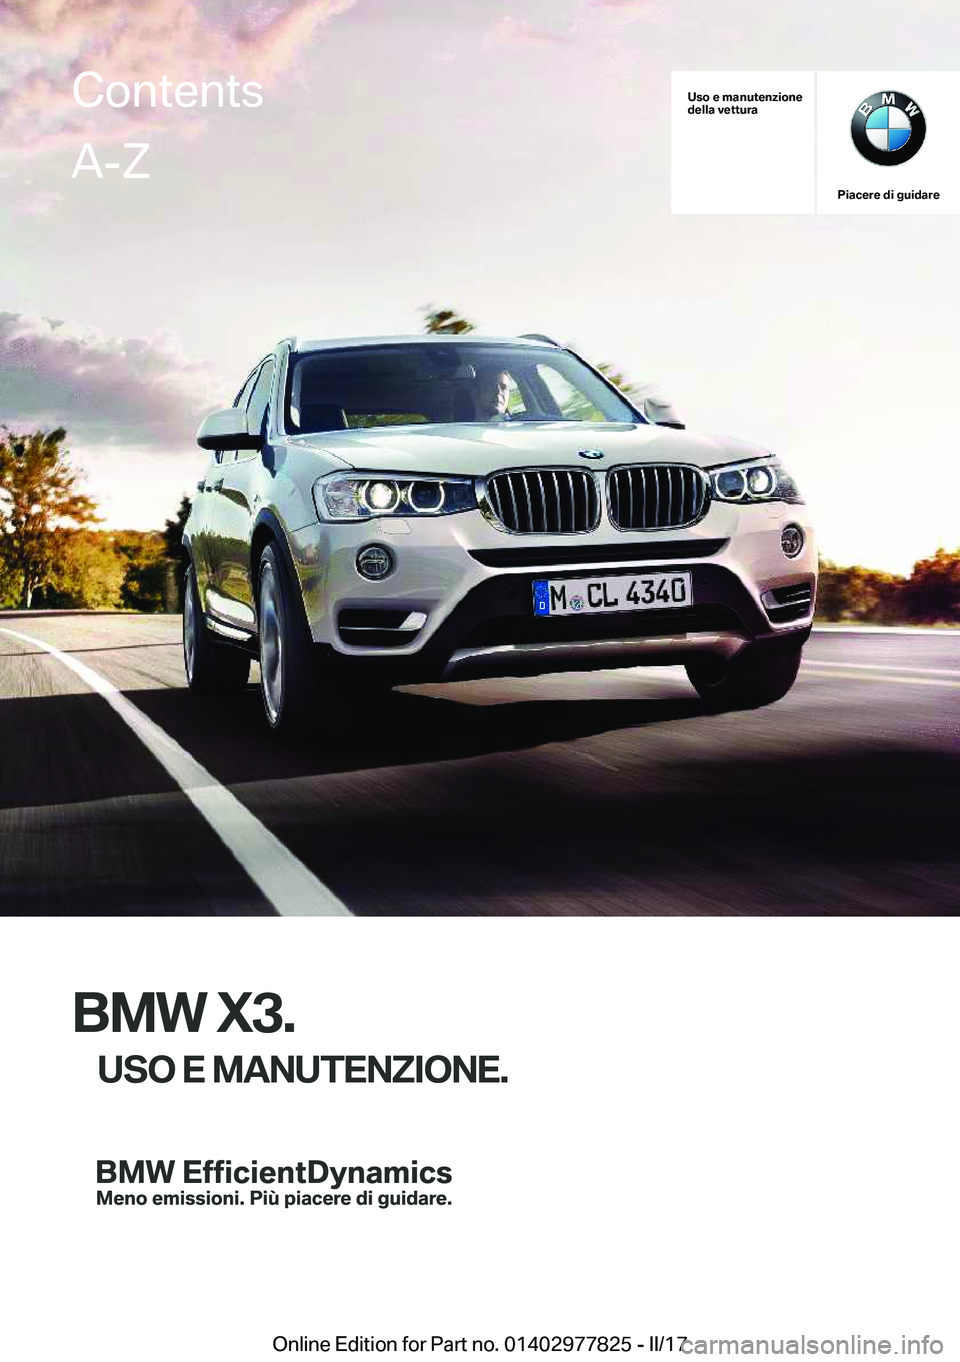 BMW X3 2017  Libretti Di Uso E manutenzione (in Italian) �U�s�o��e��m�a�n�u�t�e�n�z�i�o�n�e
�d�e�l�l�a��v�e�t�t�u�r�a
�P�i�a�c�e�r�e��d�i��g�u�i�d�a�r�e
�B�M�W��X�3�.
�U�S�O��E��M�A�N�U�T�E�N�Z�I�O�N�E�.
�C�o�n�t�e�n�t�s�A�-�Z
�O�n�l�i�n�e� �E�d�i�t